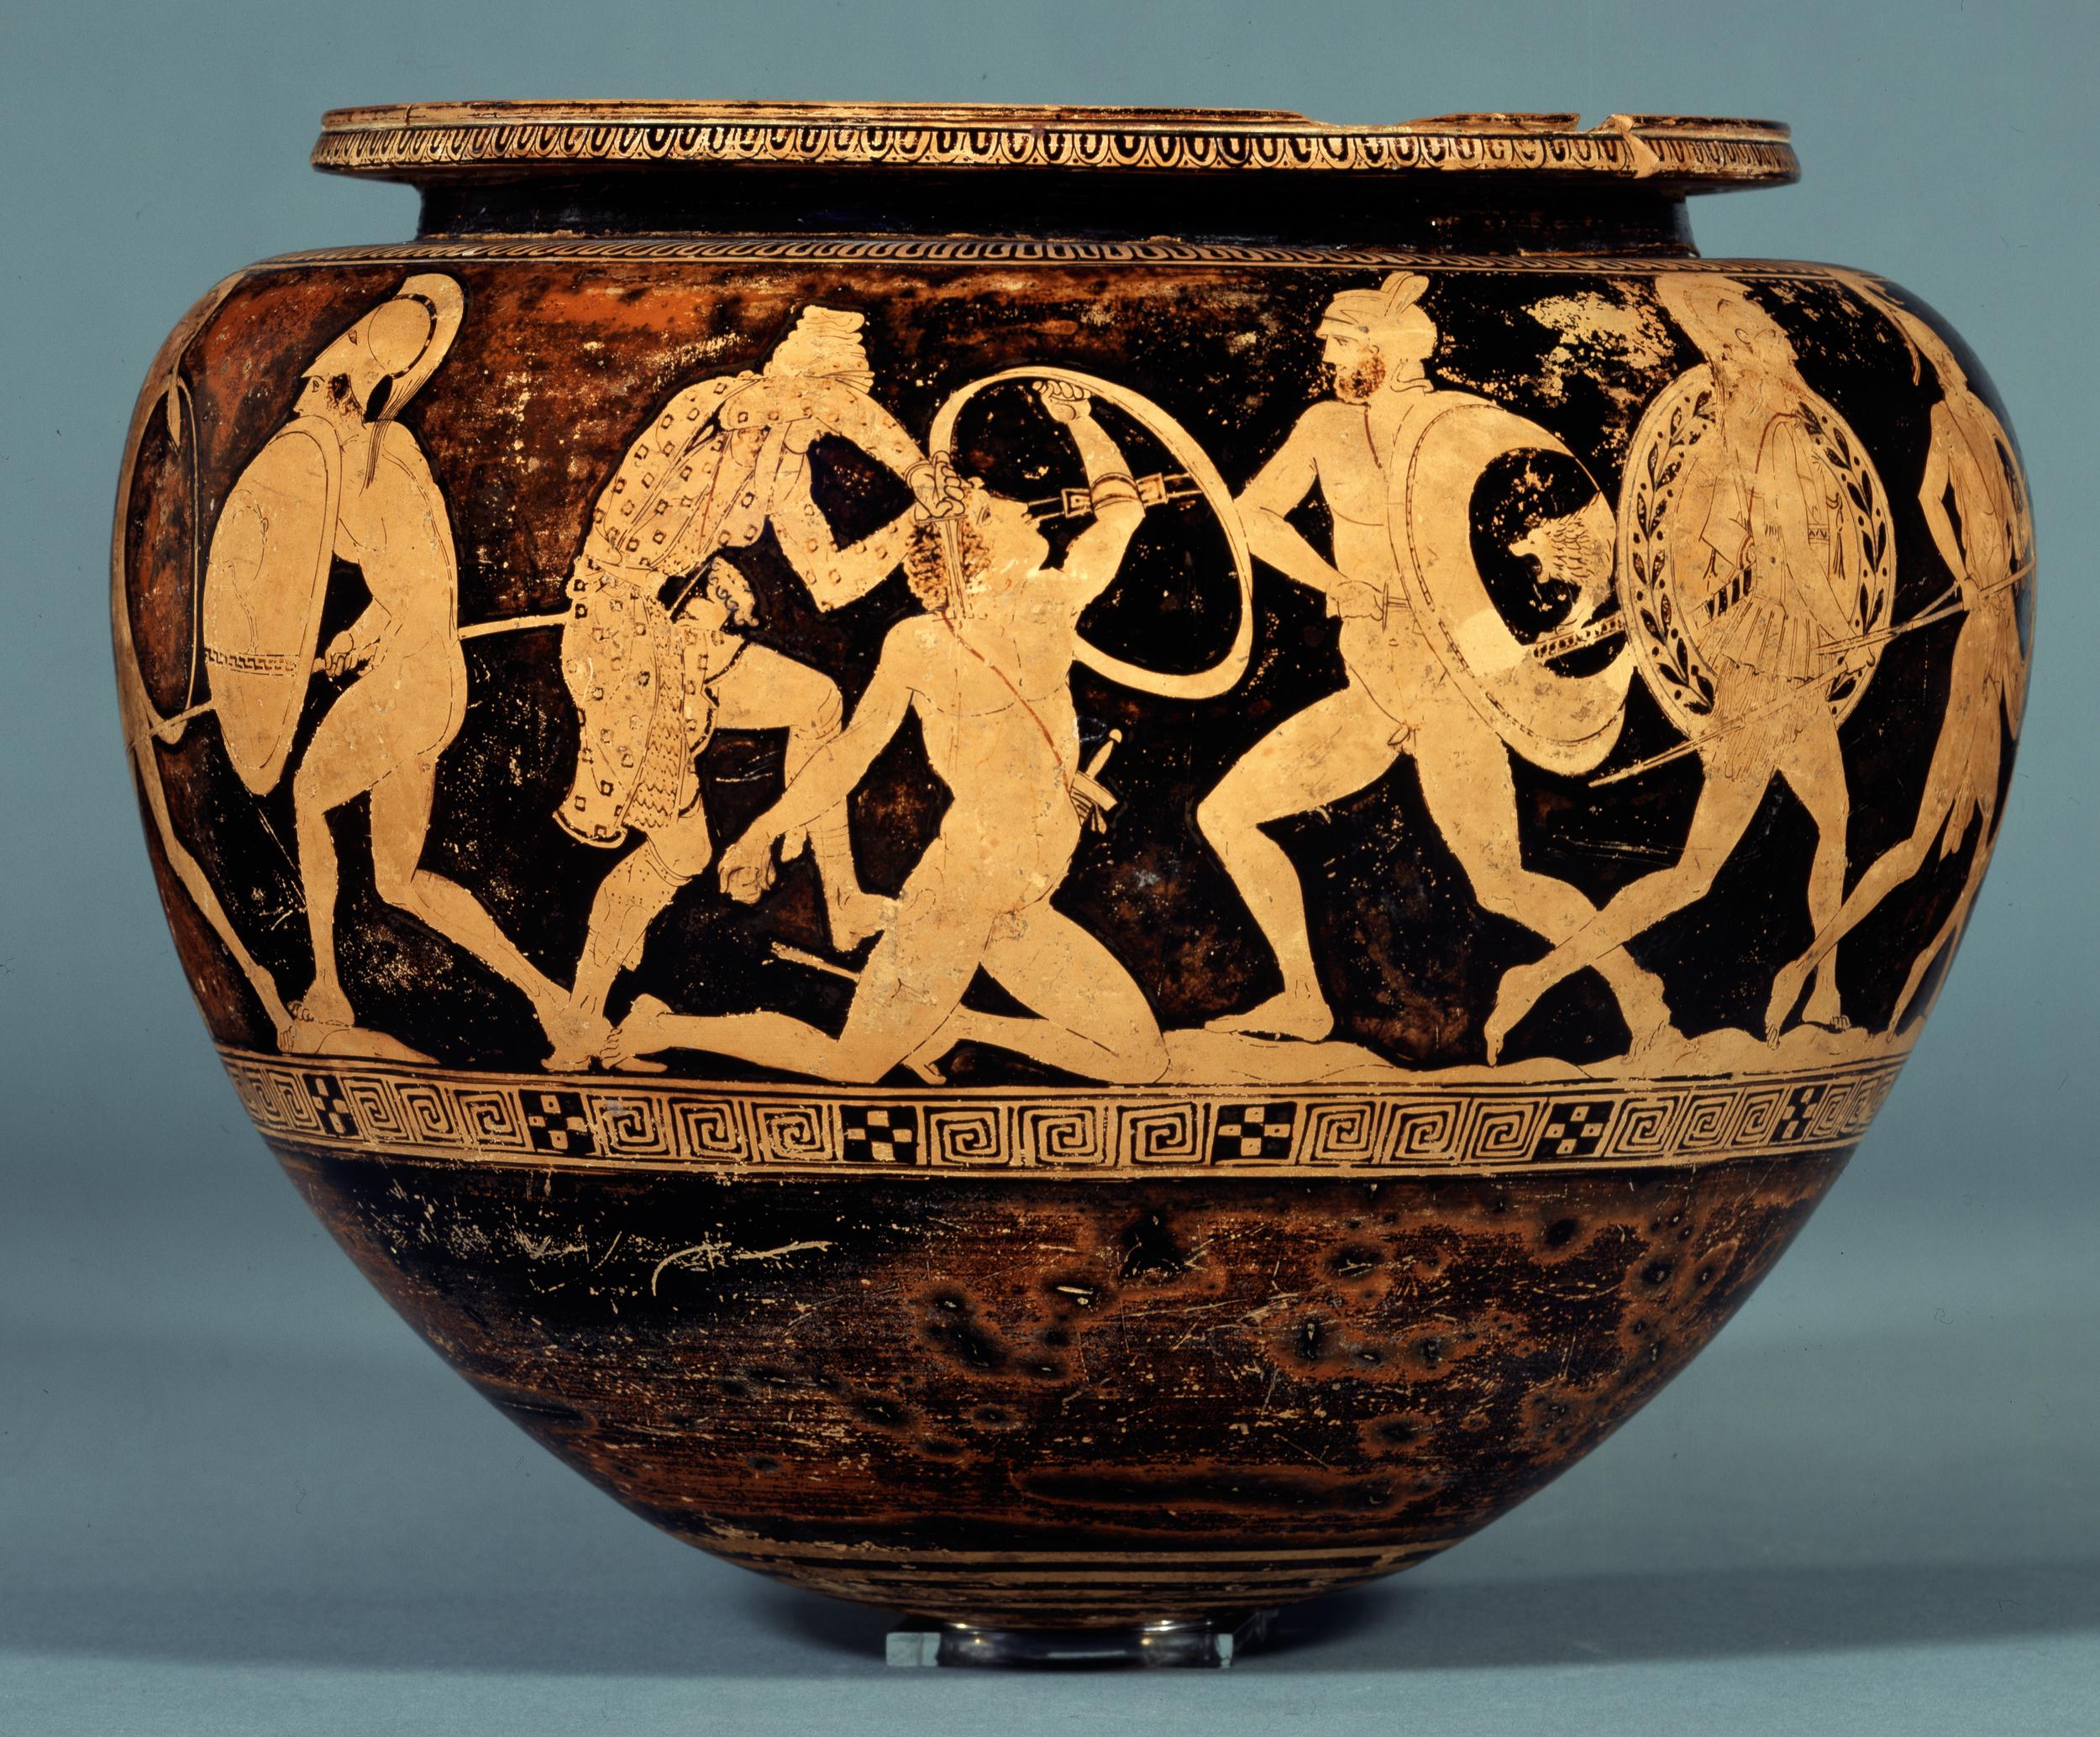 Vase painting: Amazon killing Melaneus